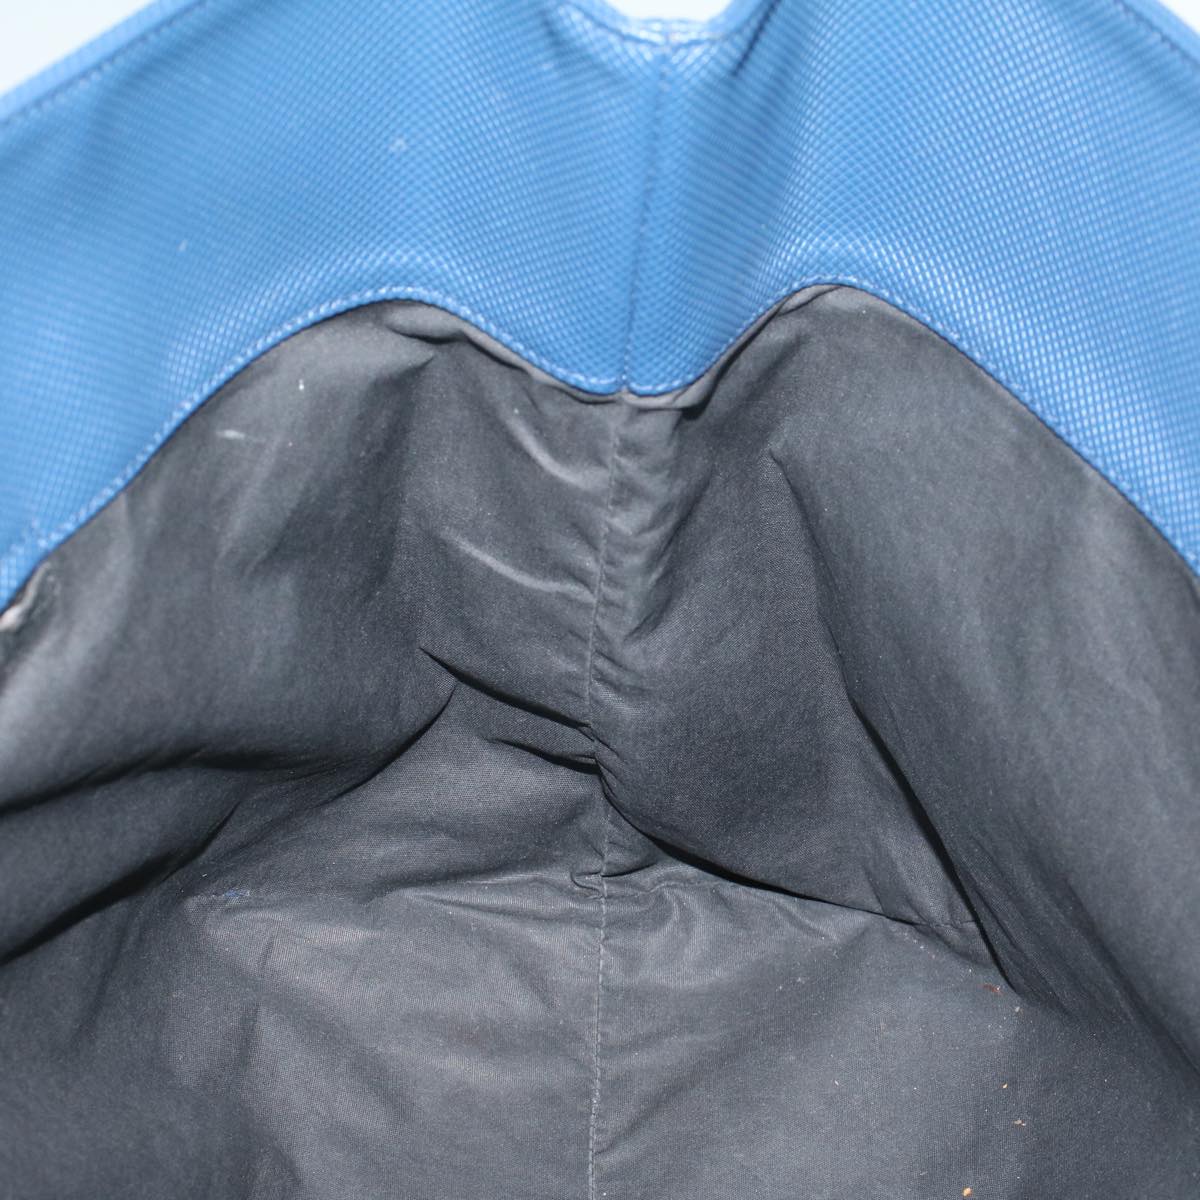 BOTTEGAVENETA Tote Bag PVC Leather Navy Auth ep1815